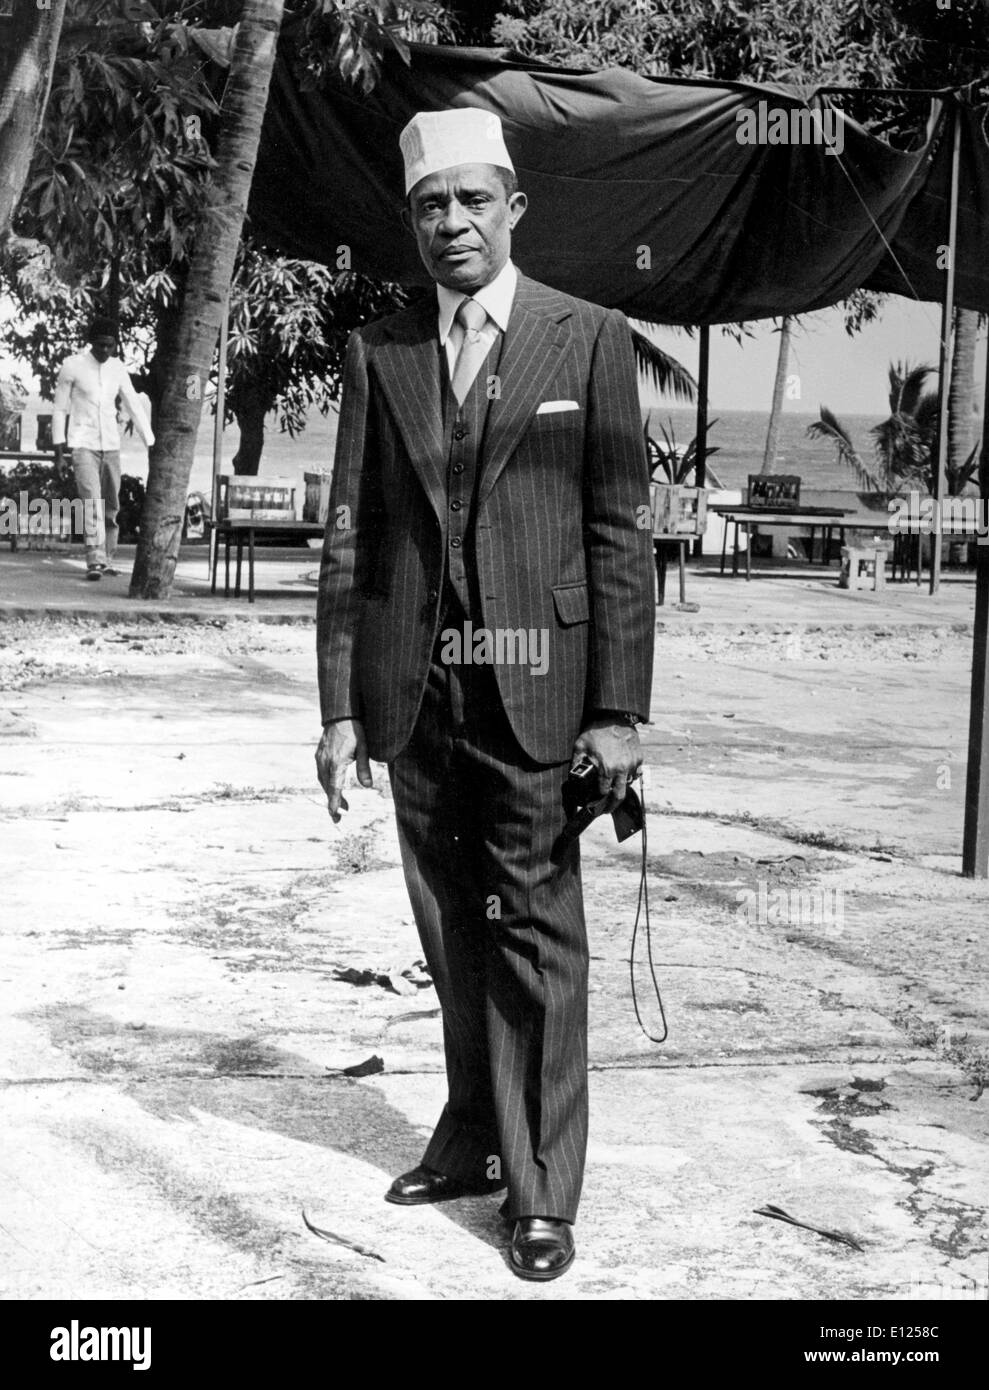 12 mai, 1987 ; de Mutsamudu, Comores ; Co-président des Comores Ahmed Abdallah est né en Juin 12th, 1919 dans Dimoni, sur l'île d'Anjouan aux Comores, situé dans l'Océan Indien. Il a été le premier président des îles des Comores Après l'indépendance de la France. Abdallah a commencé à participer au gouvernement dans les années 1940 et devint rapidement l'une des plus importantes personnalités politiques non français aux Comores. Il a été le président du conseil général de 1949 à 1953. Il a été tué lors d'un coup le 27 novembre, 1989. (Crédit Image : KEYSTONE/ZUMAPRESS.com) Photos USA Banque D'Images